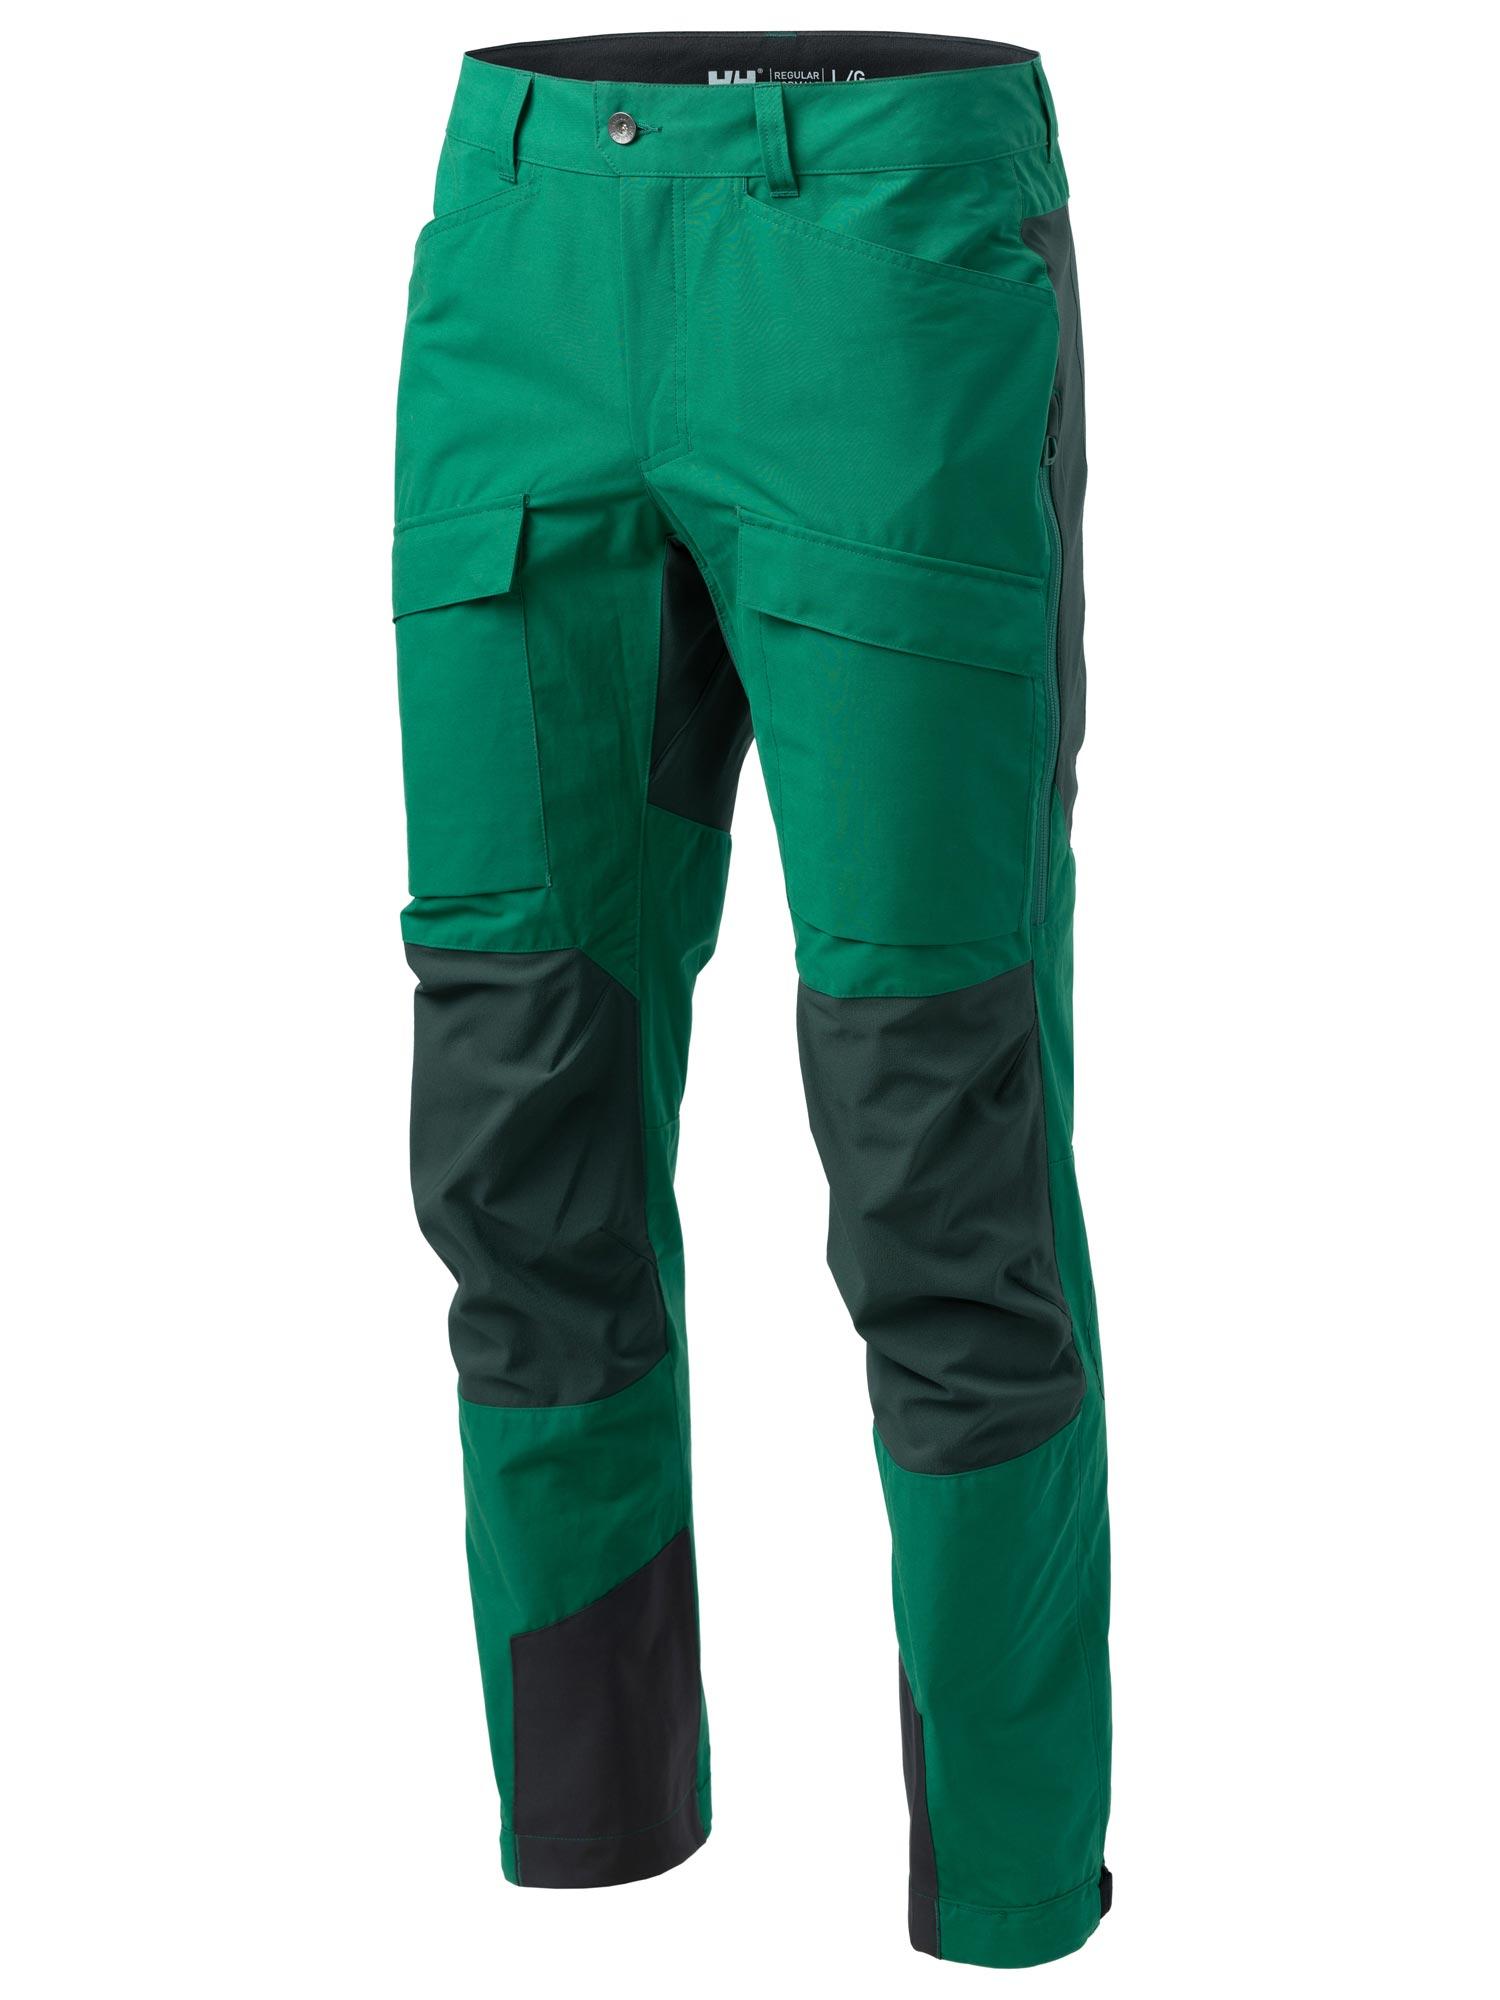 Selected image for HELLY HANSEN Muške pantalone za planinarenje Veir Tur zelene